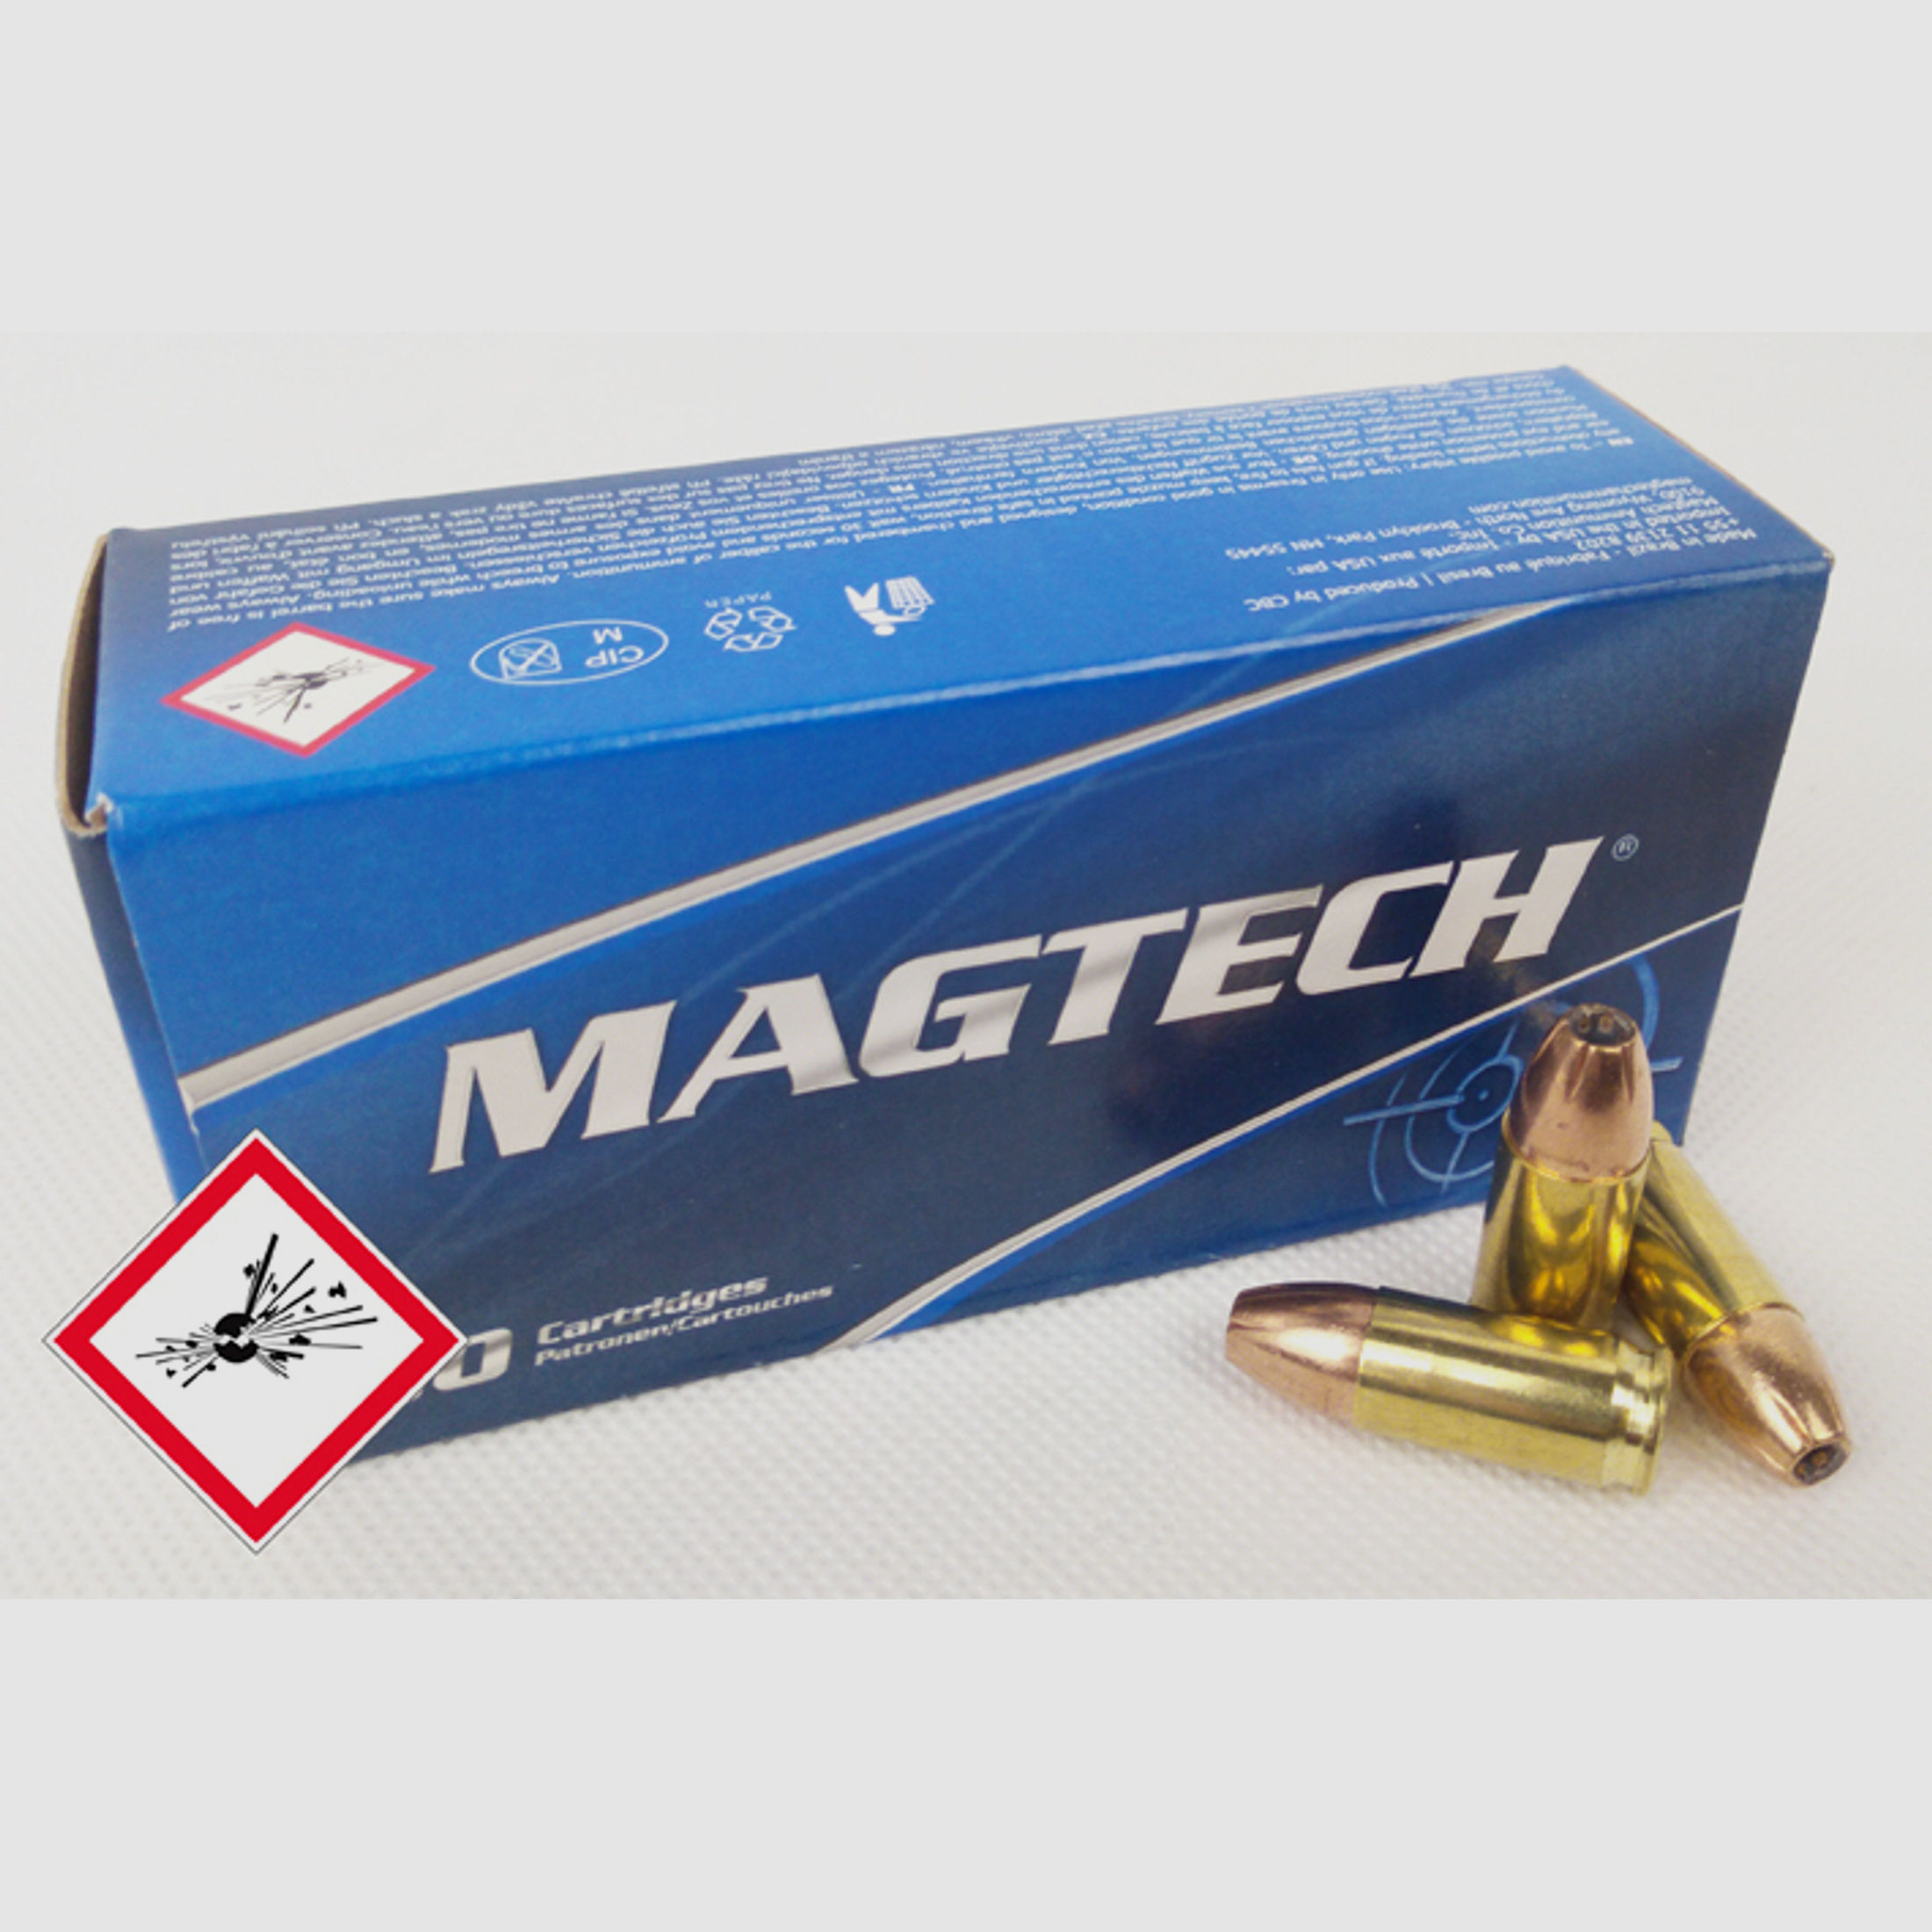 Magtech Pistolenpatrone 9mm Luger JHP 115grs